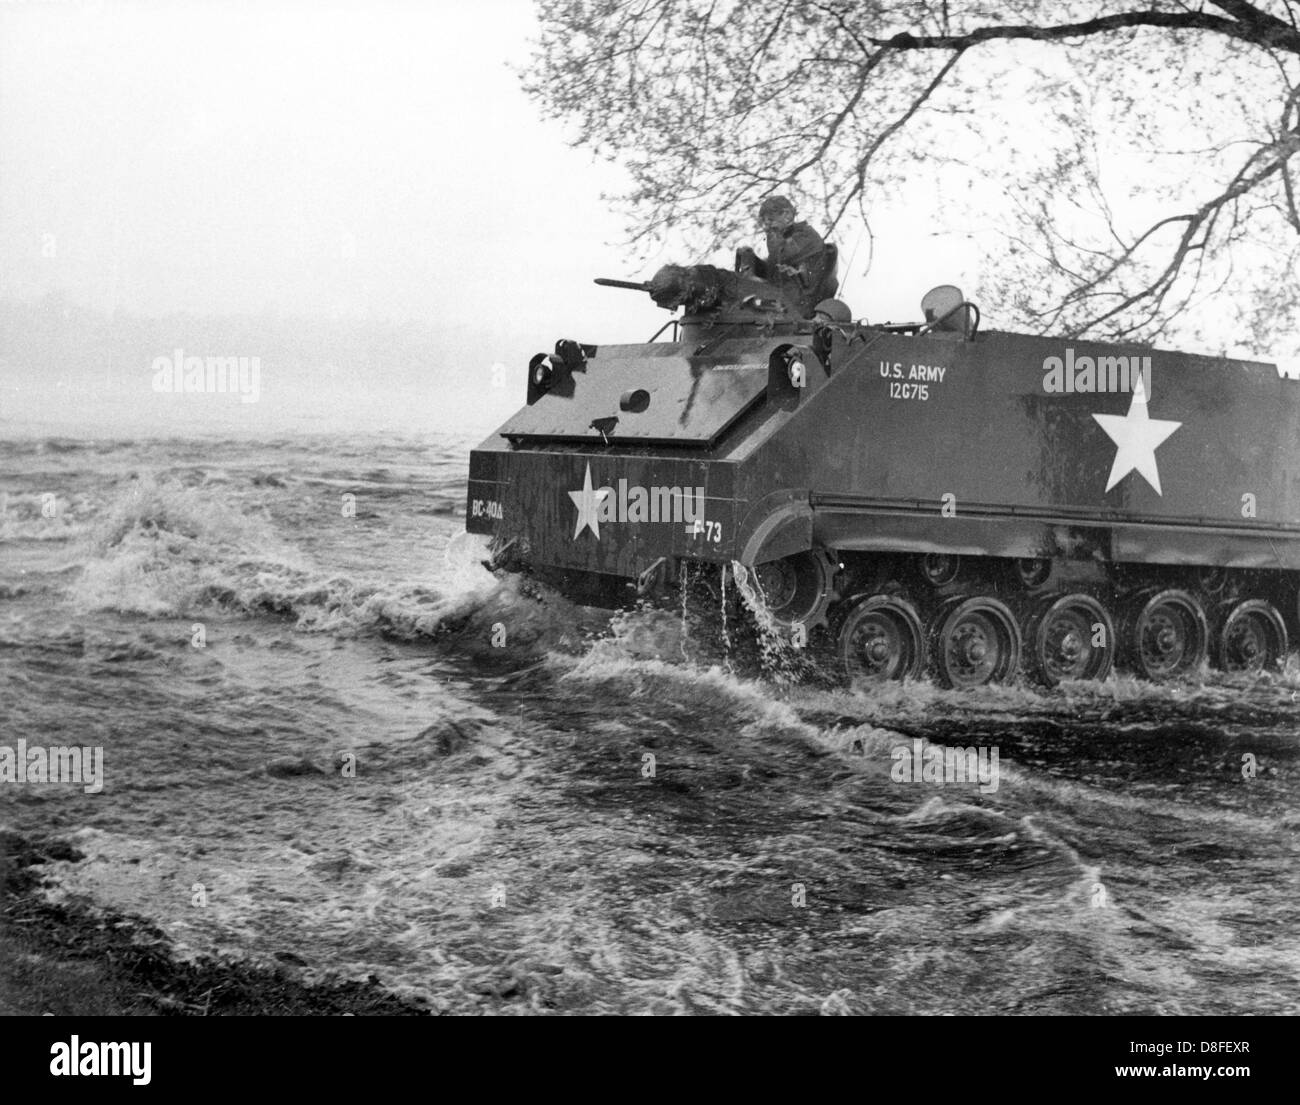 Eine amphibische Fertigkeit der US-Armee landete am Ufer der Havel River im Grunewald in Berlin während einer Feld-Übung am 12. April 1961. Die Übung war Teil eines großen Feld Übung der US-Armee in Berlin mit massiven Truppenbewegungen. Stockfoto